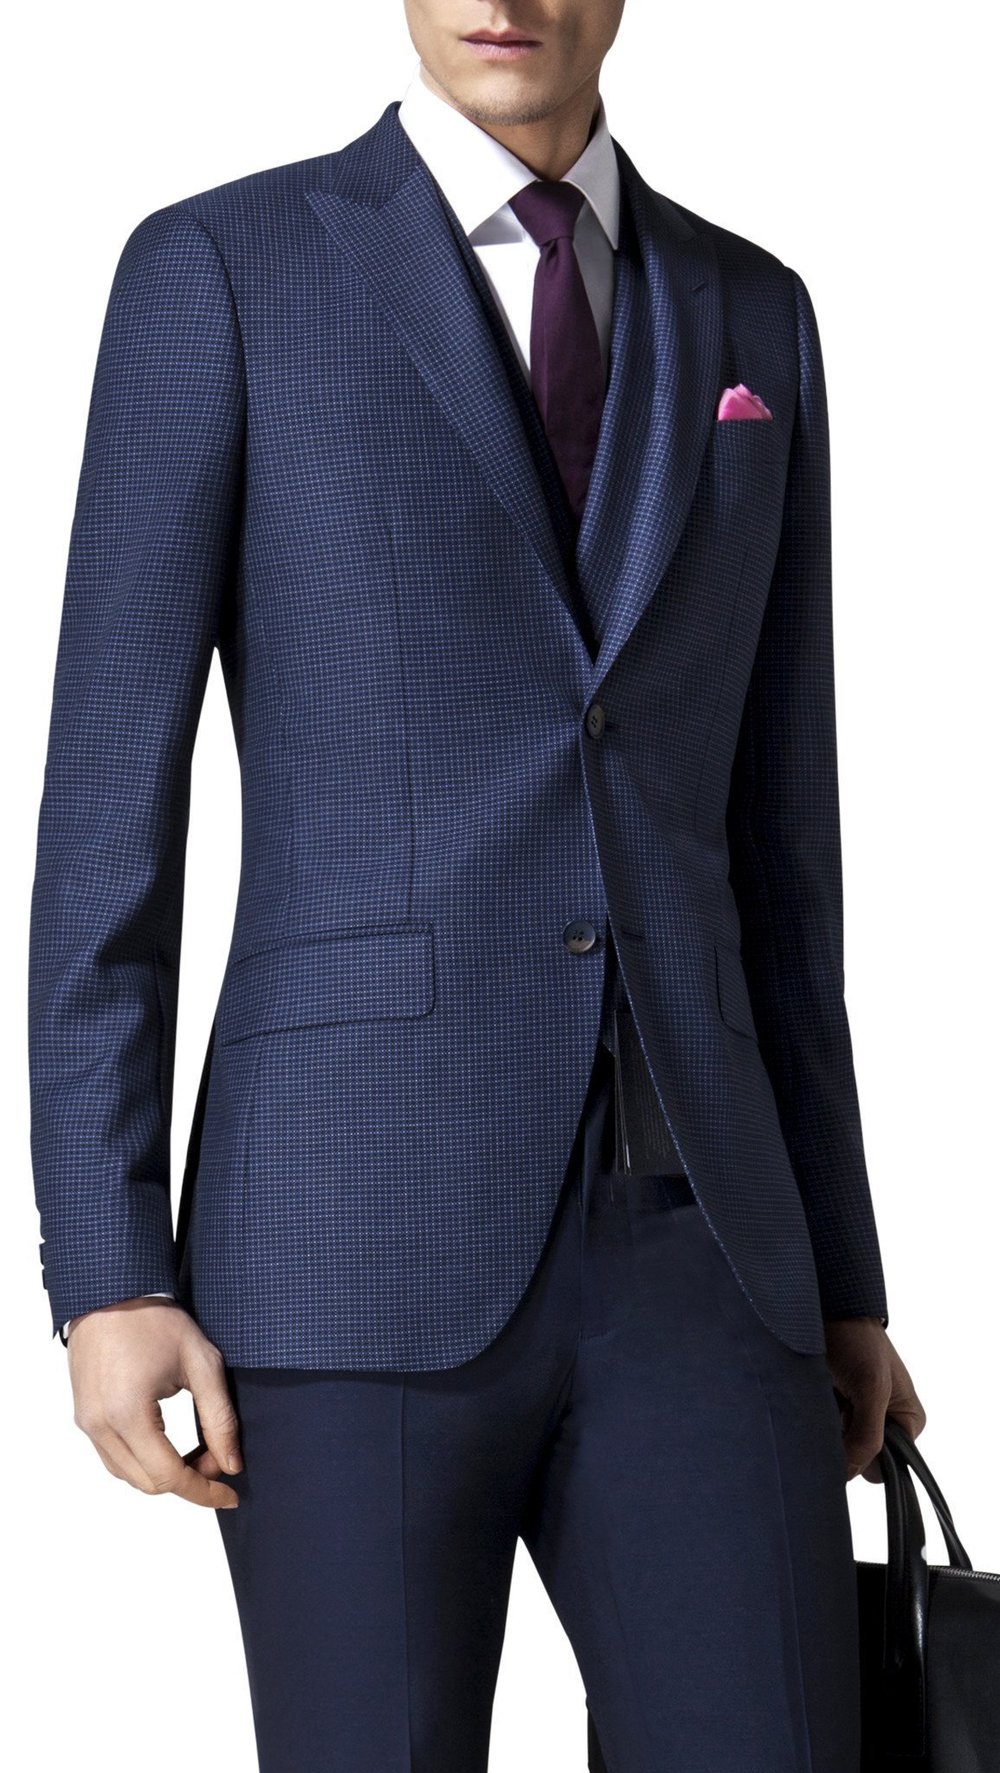  Business Suit